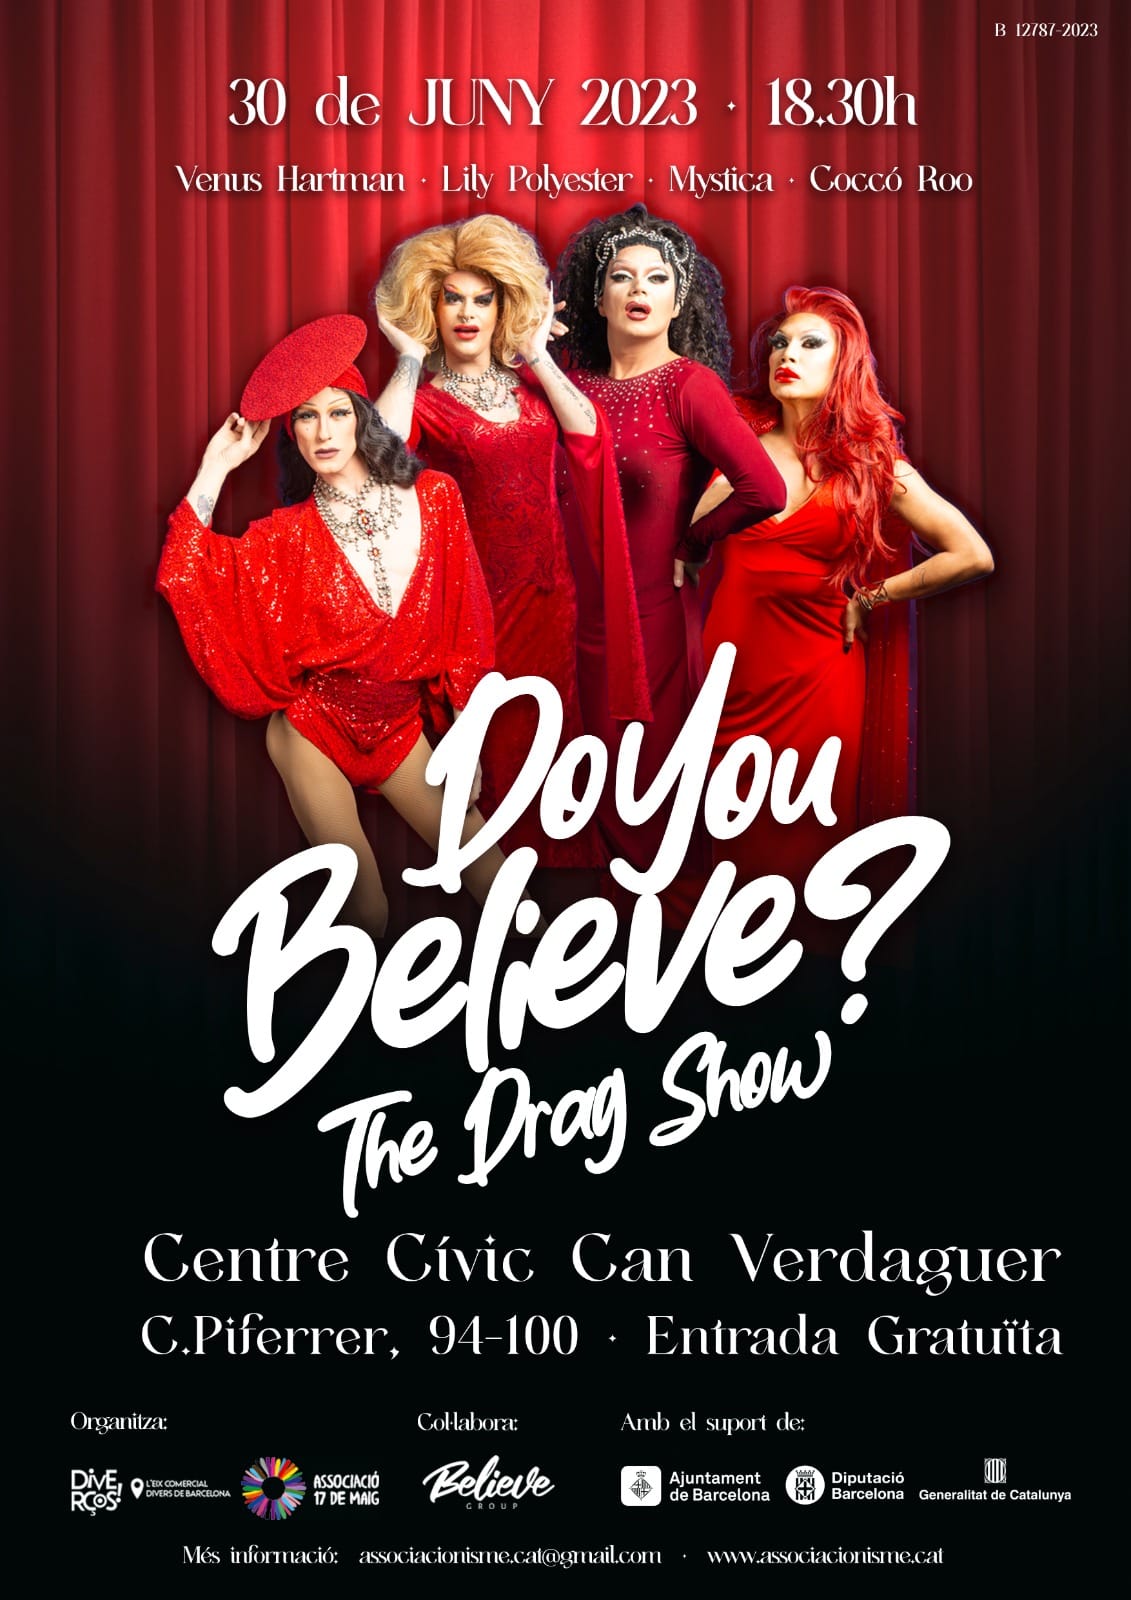 30 de juny – Do you believe? The Drag Show